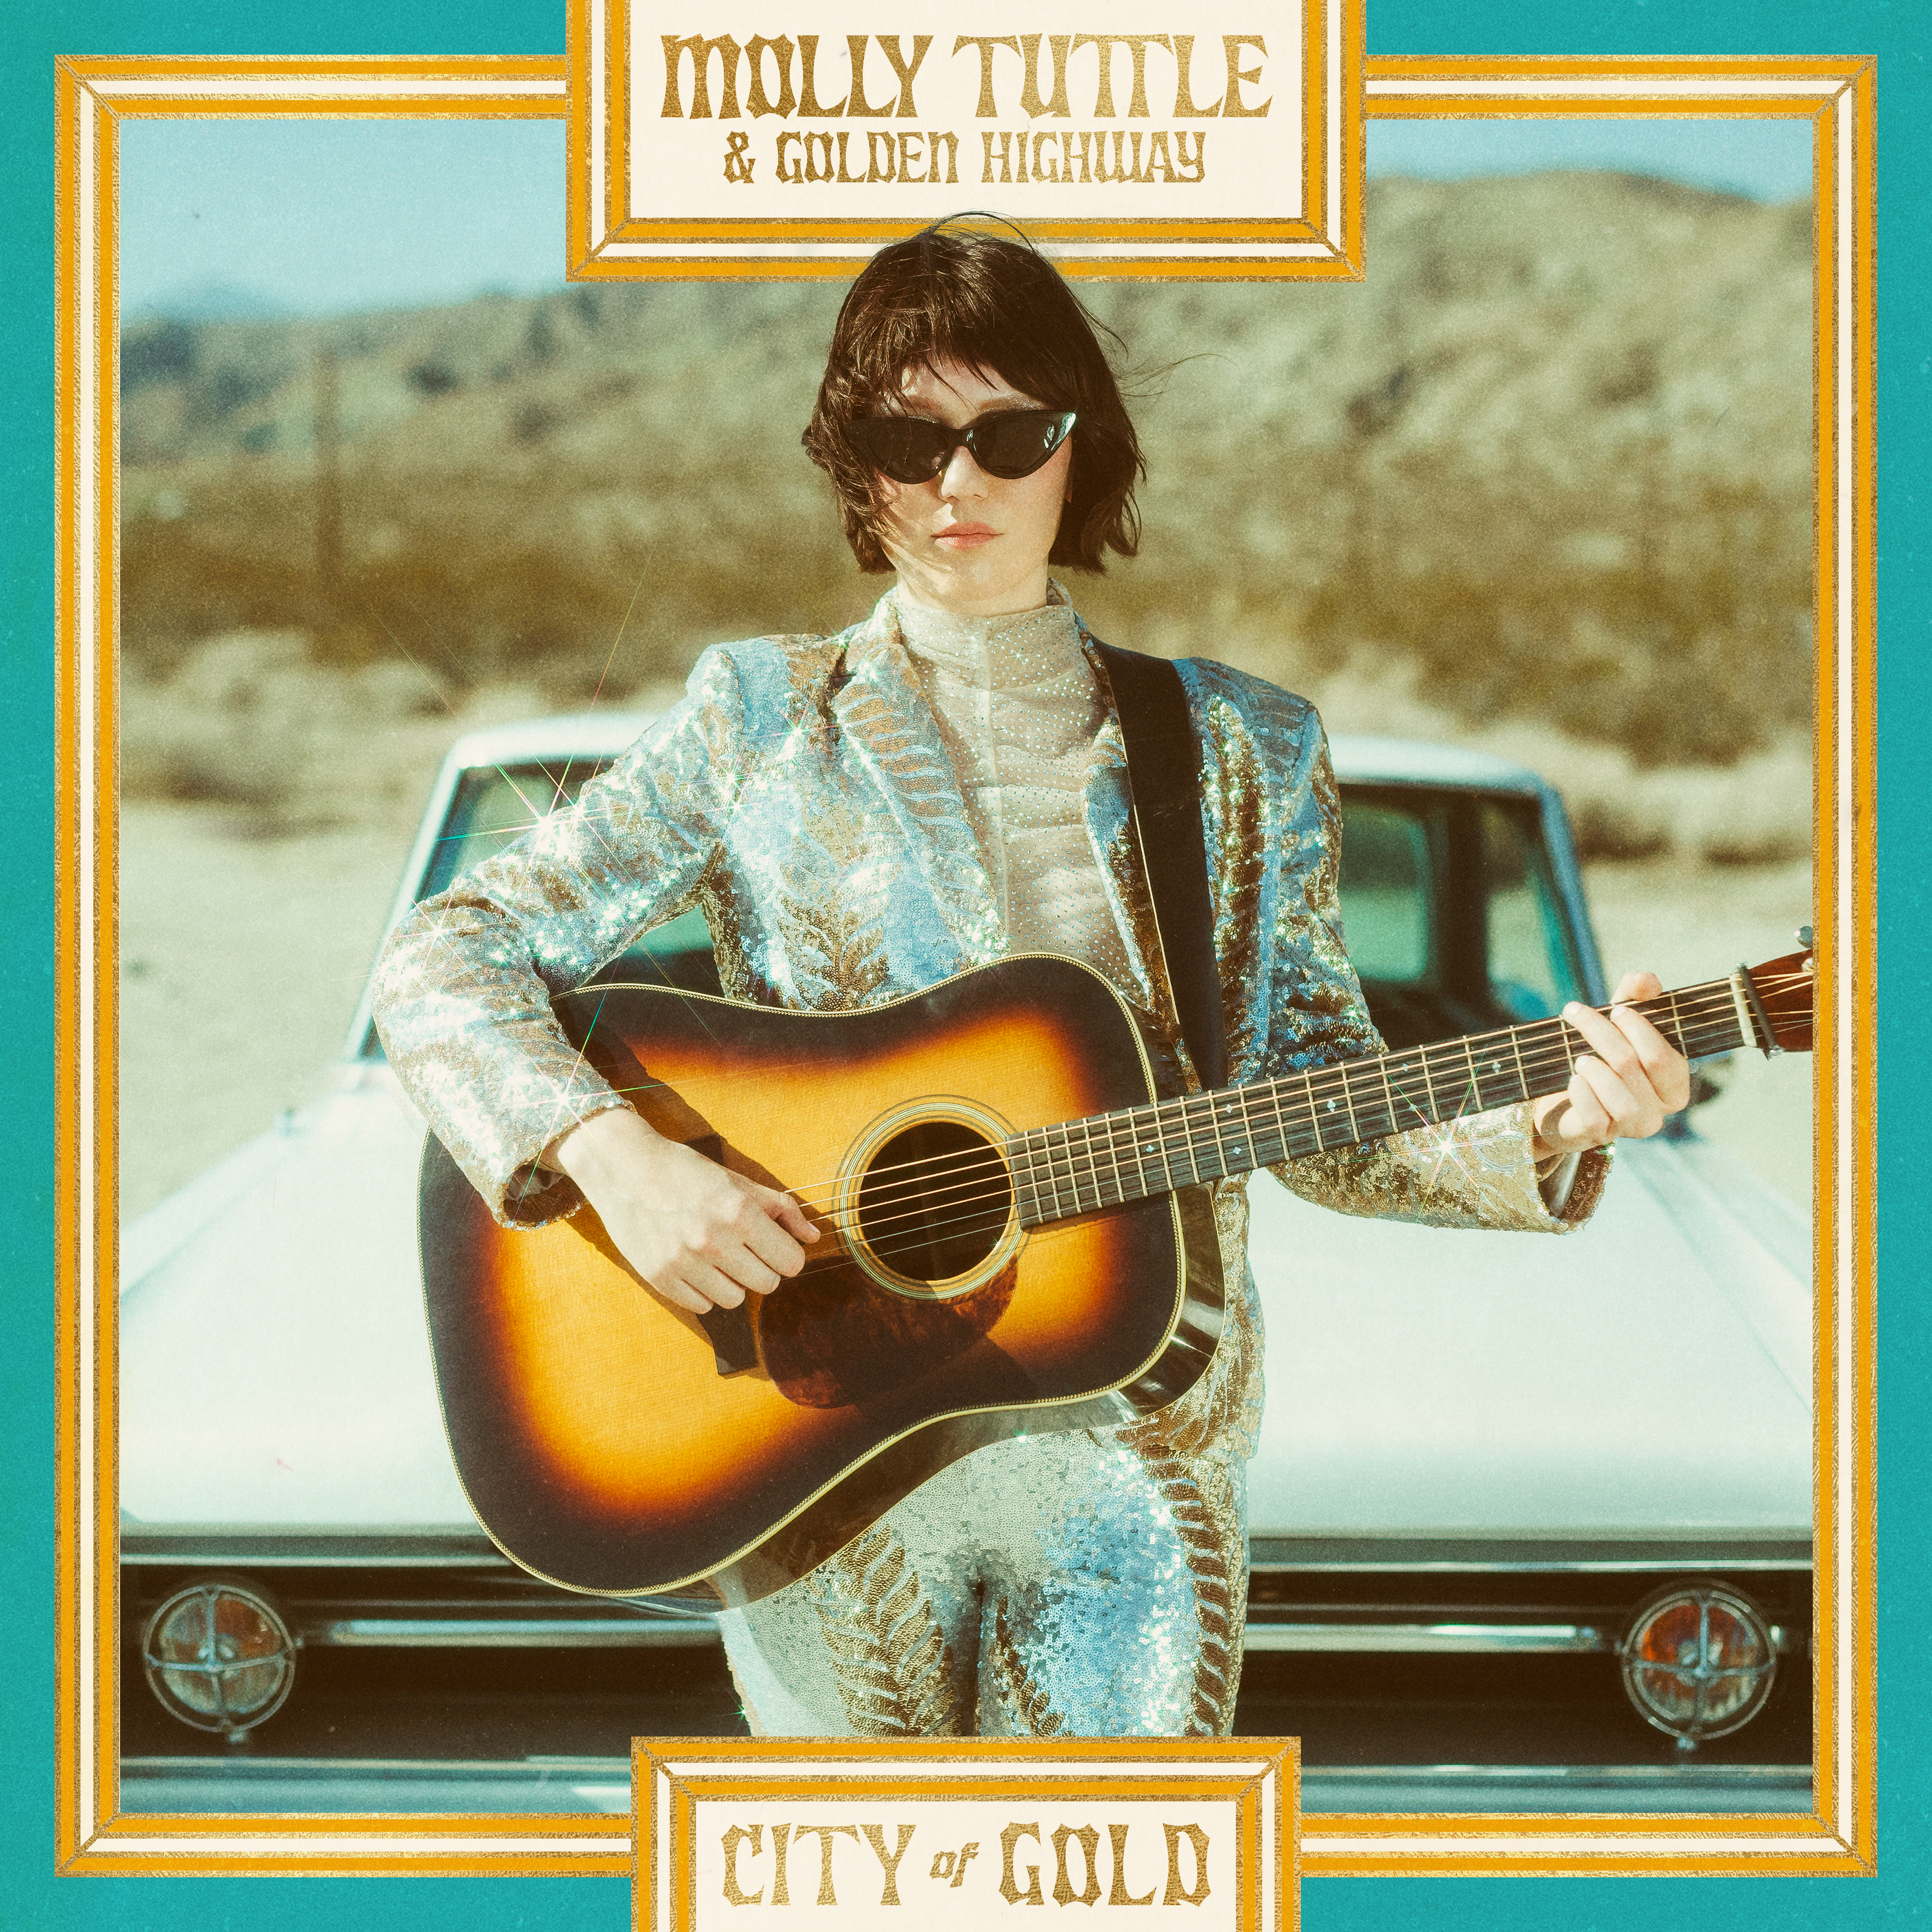 Molly Tuttle & Golden Highway City of Gold (CD) Album - Bild 1 von 1